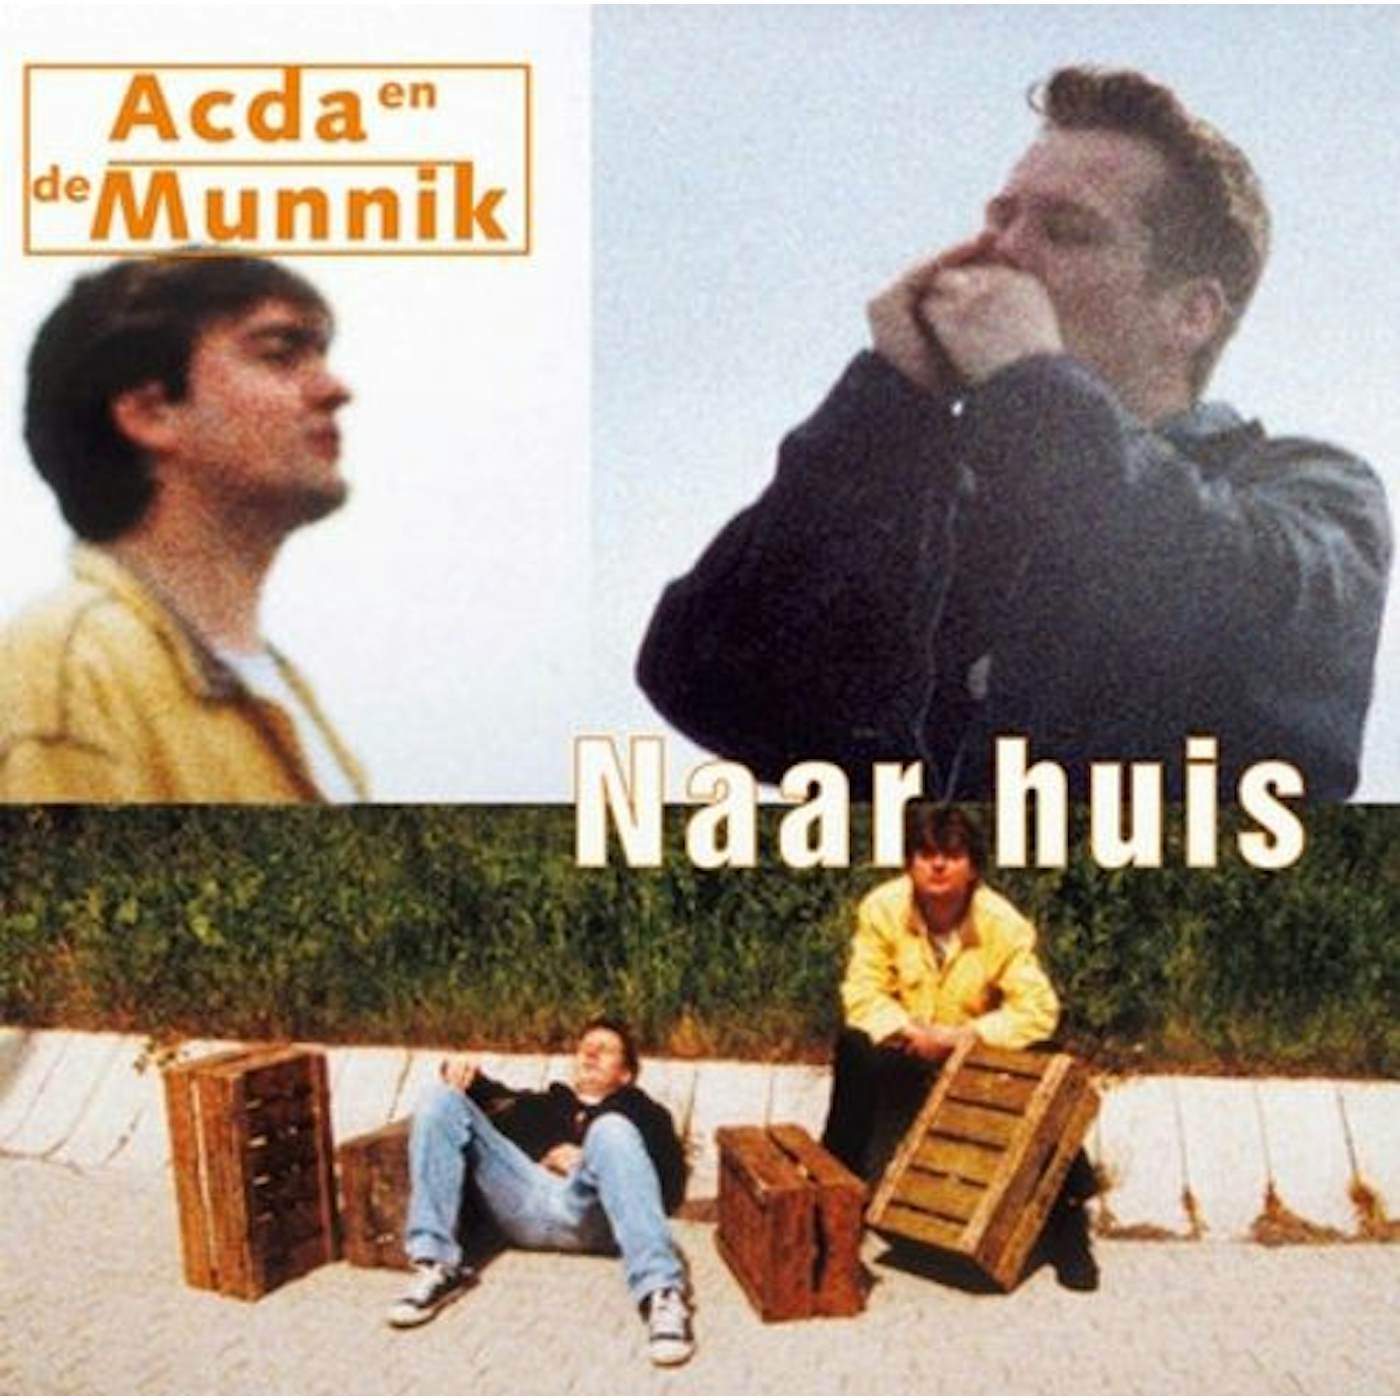 Acda & De Munnik Naar huis Vinyl Record